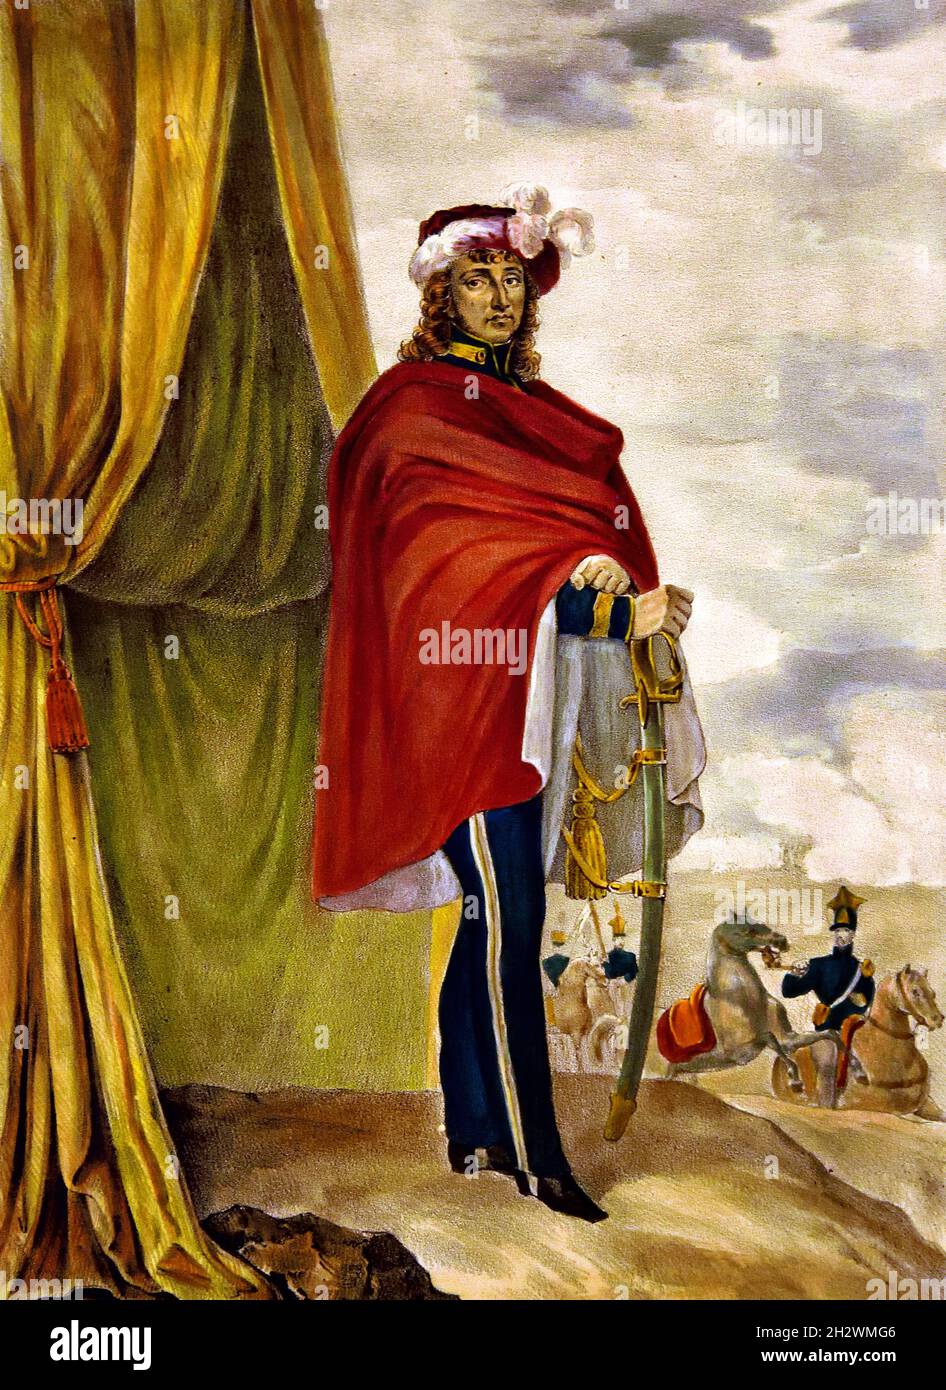 Retrato de Joachim Murat ( 1767-1815) Rey de Nápoles, Nápoles, Napoleón, Napoleón Bonaparte, (1769-1821), Napoleón I, emperador francés, Francia. Foto de stock